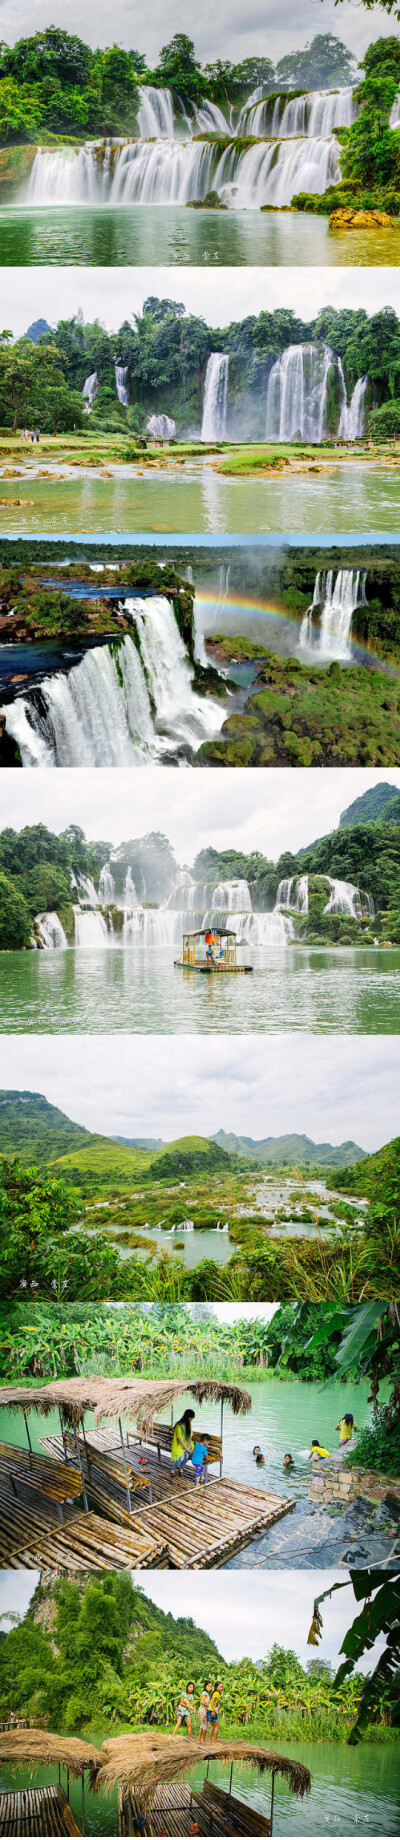 【广西崇左】
中国广西边境有一个世外桃源，它的名字叫崇左。这里的德天瀑布是亚洲第一大跨国瀑布，也是花千骨取景拍摄地之一。